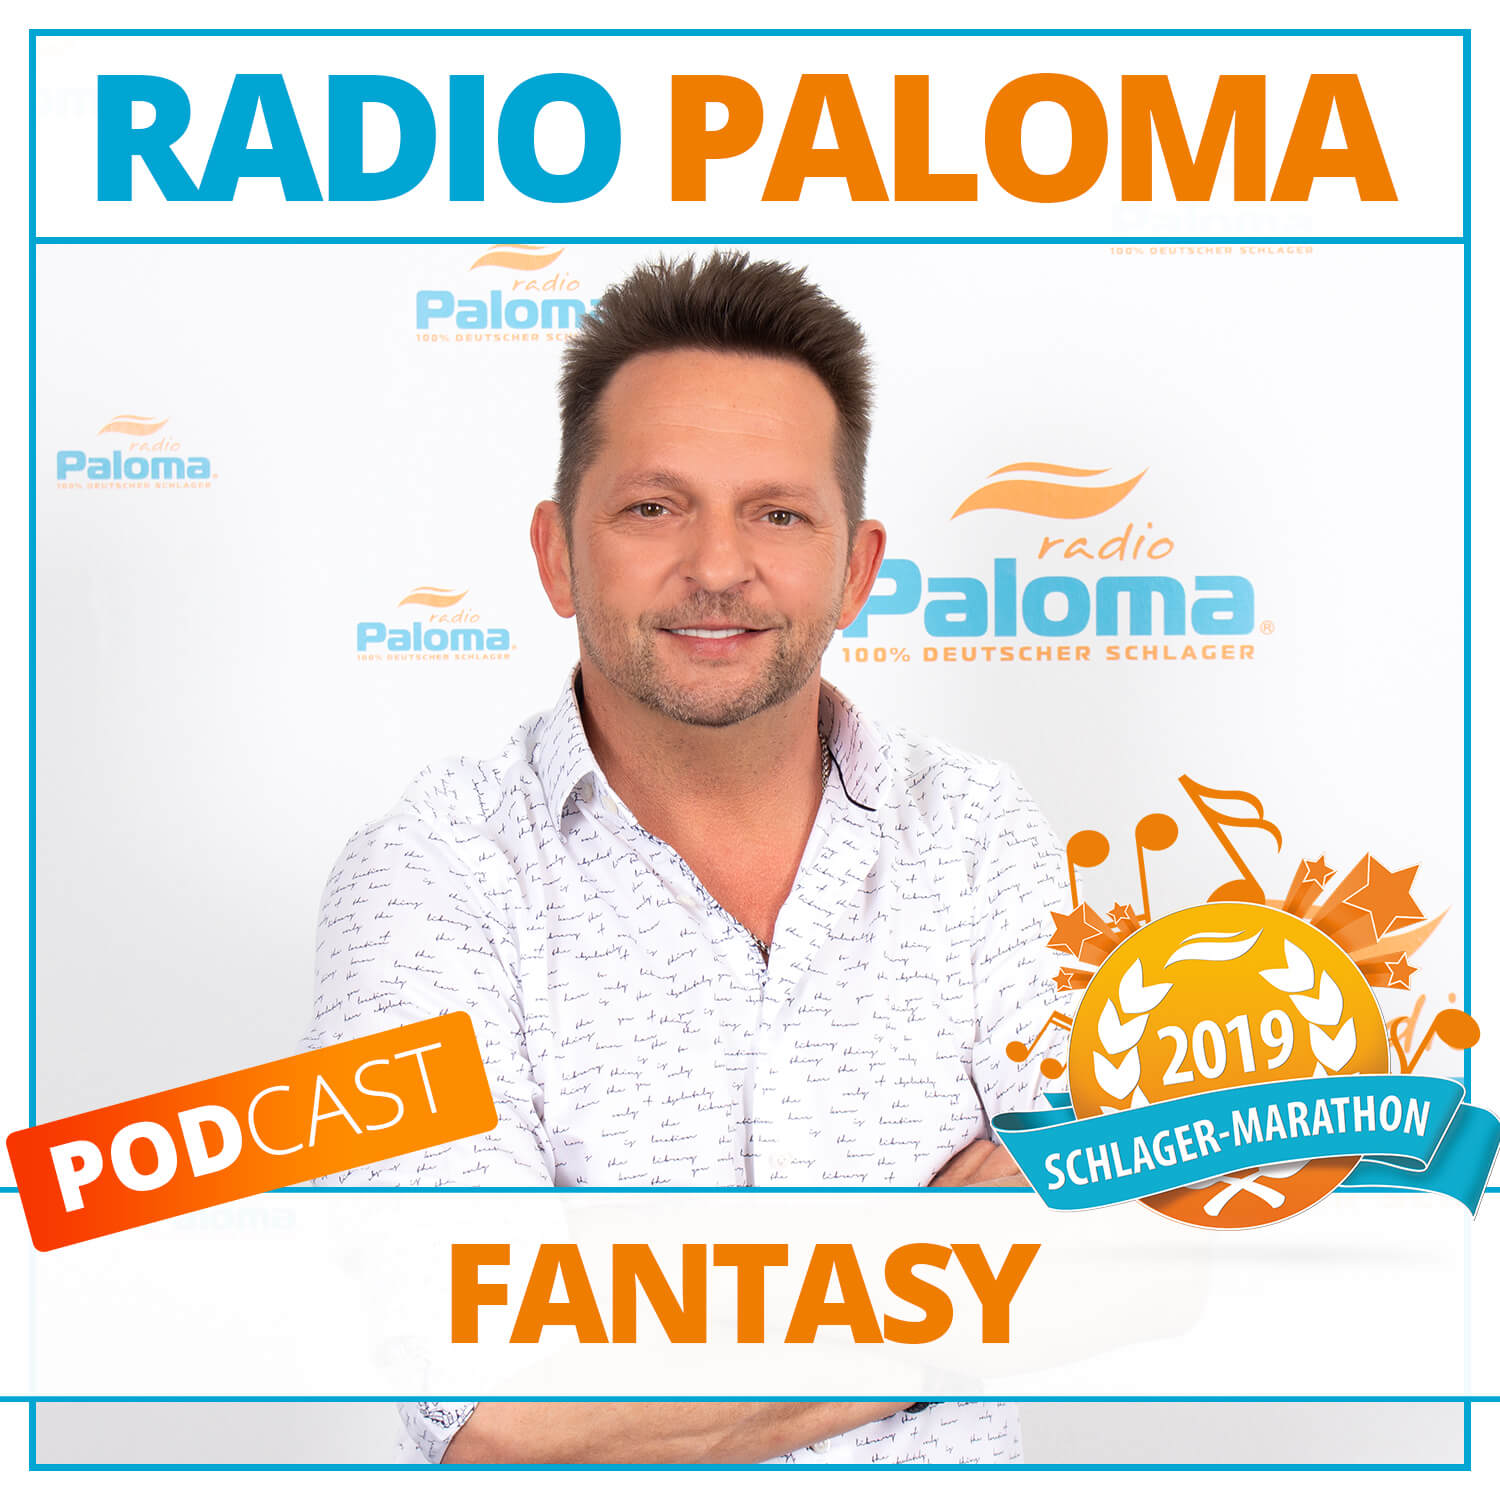 Der Radio Paloma SchlagerMarathon 2019 mit Fantasy